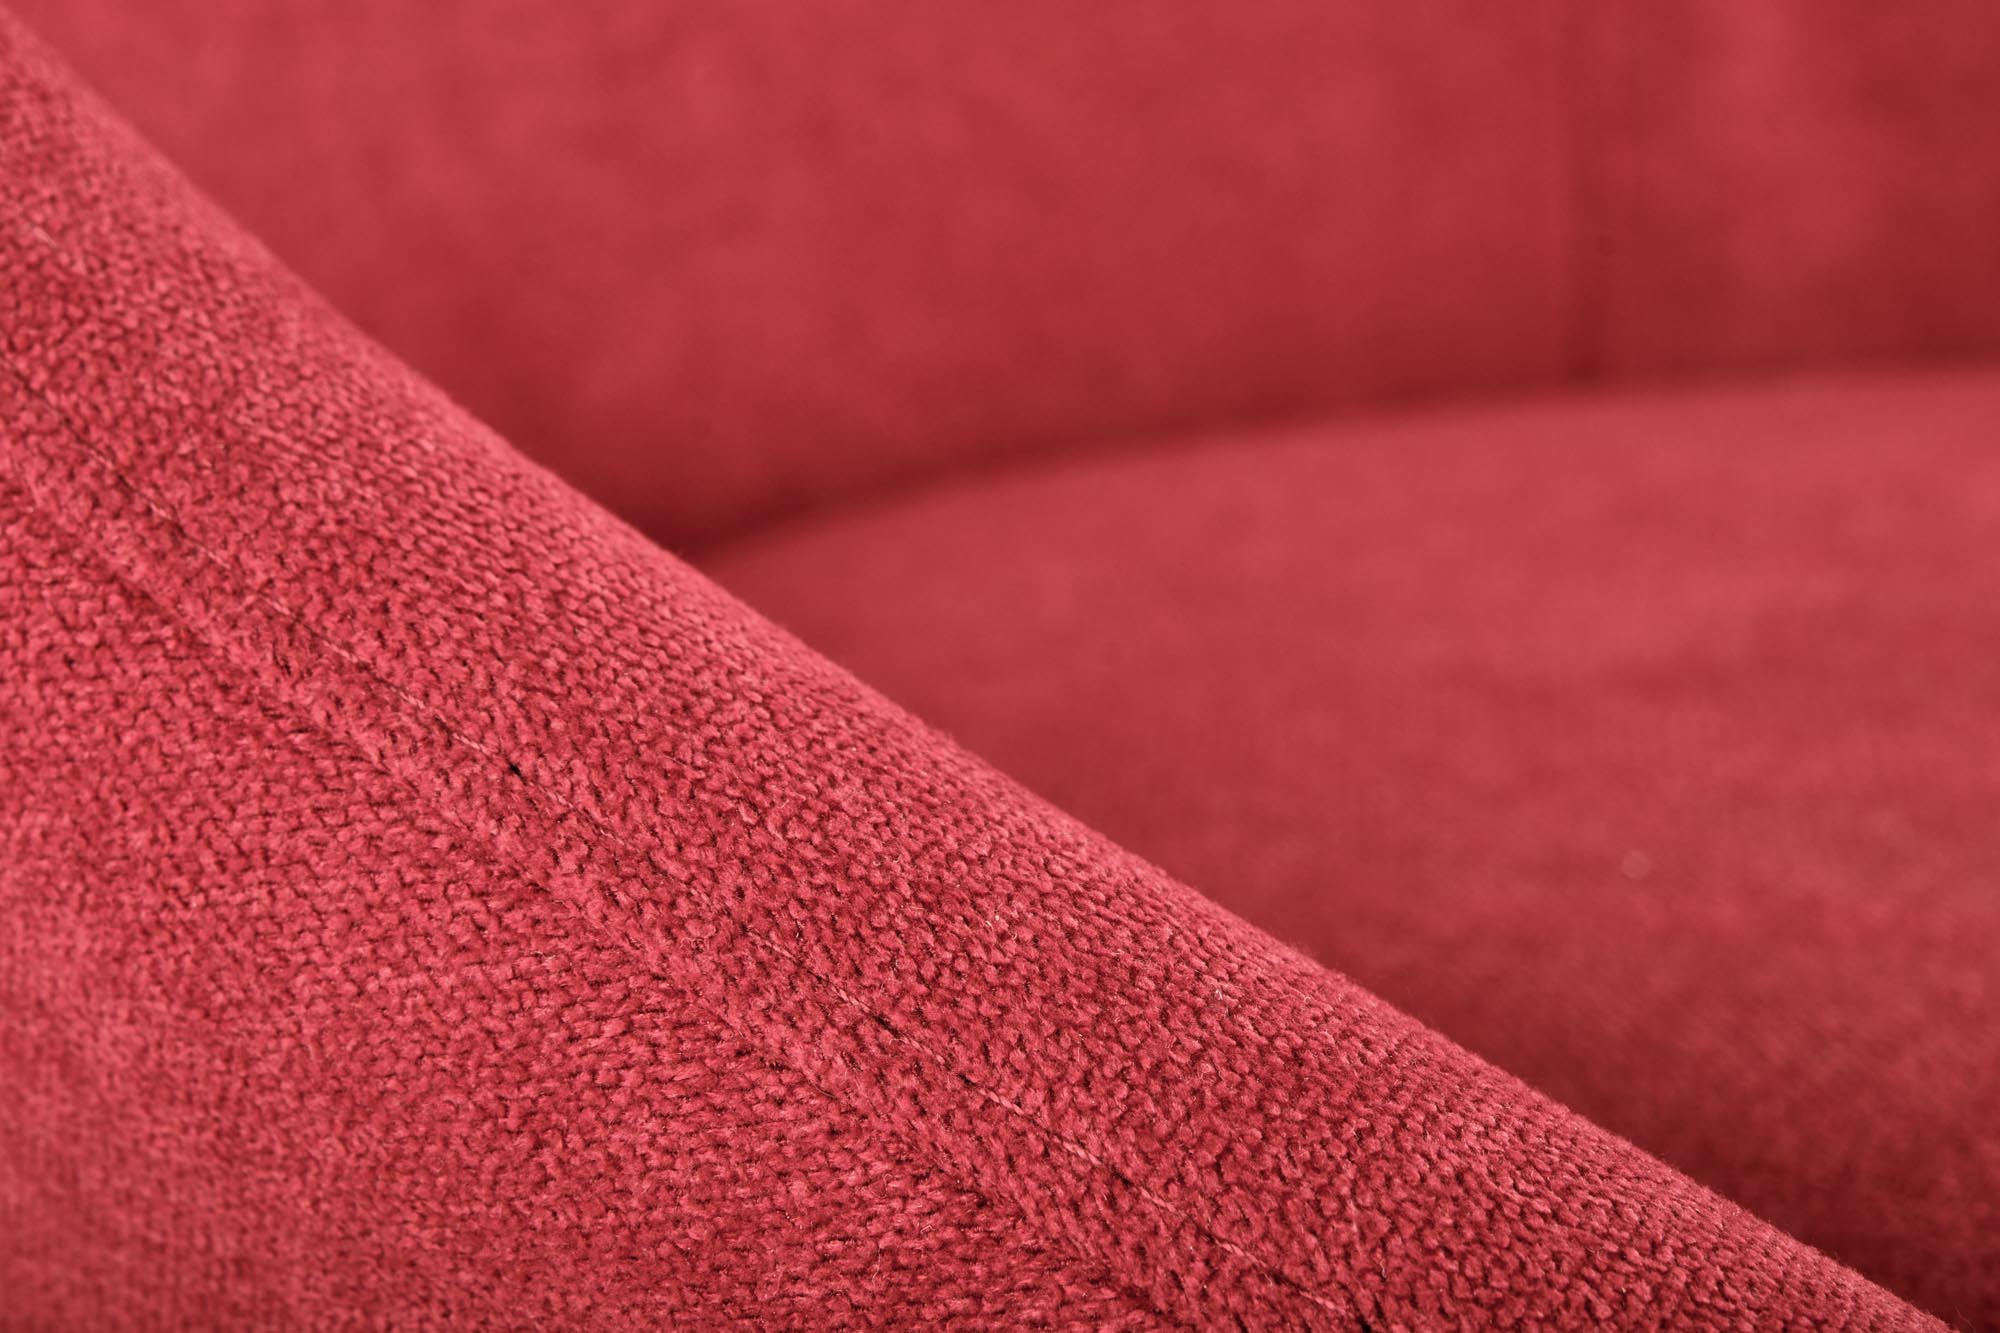 K431 stolica, boja: crvena